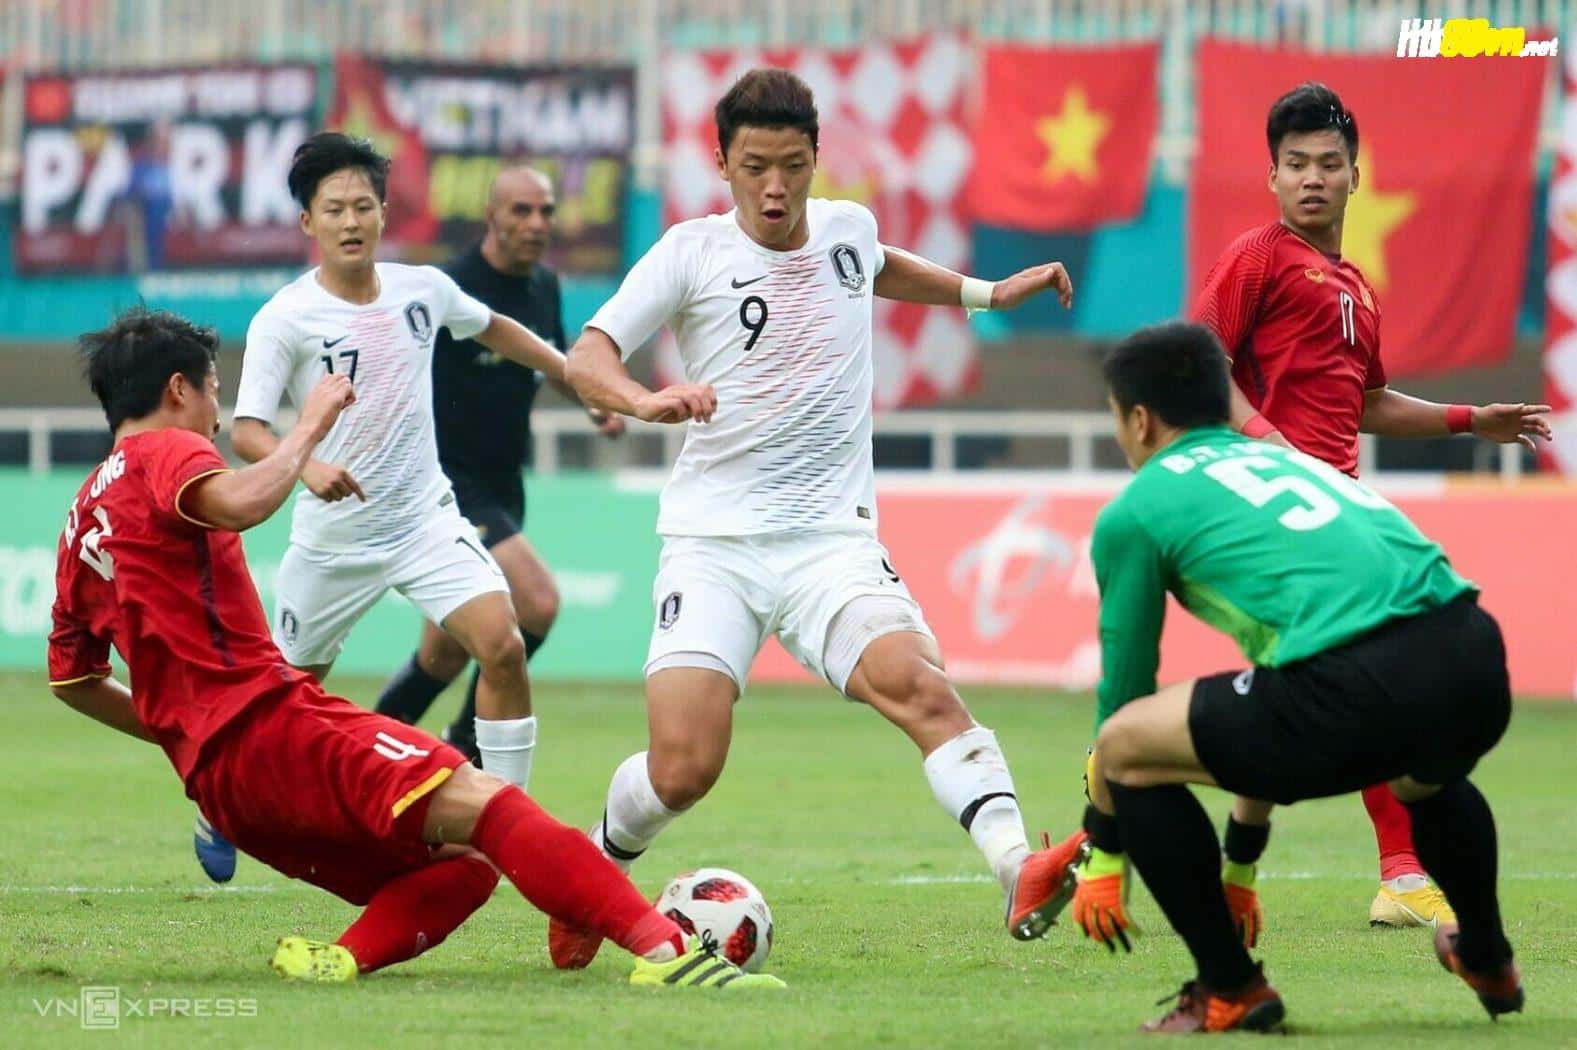 Tiền đạo Hwang Hee-chan (số 9) đang thi đấu cho Wolves tại Ngoại hạng Anh từng đối đầu đội tuyển Olympic Việt Nam tại bán kết Asiad 2018. Ảnh: Hiếu Lương